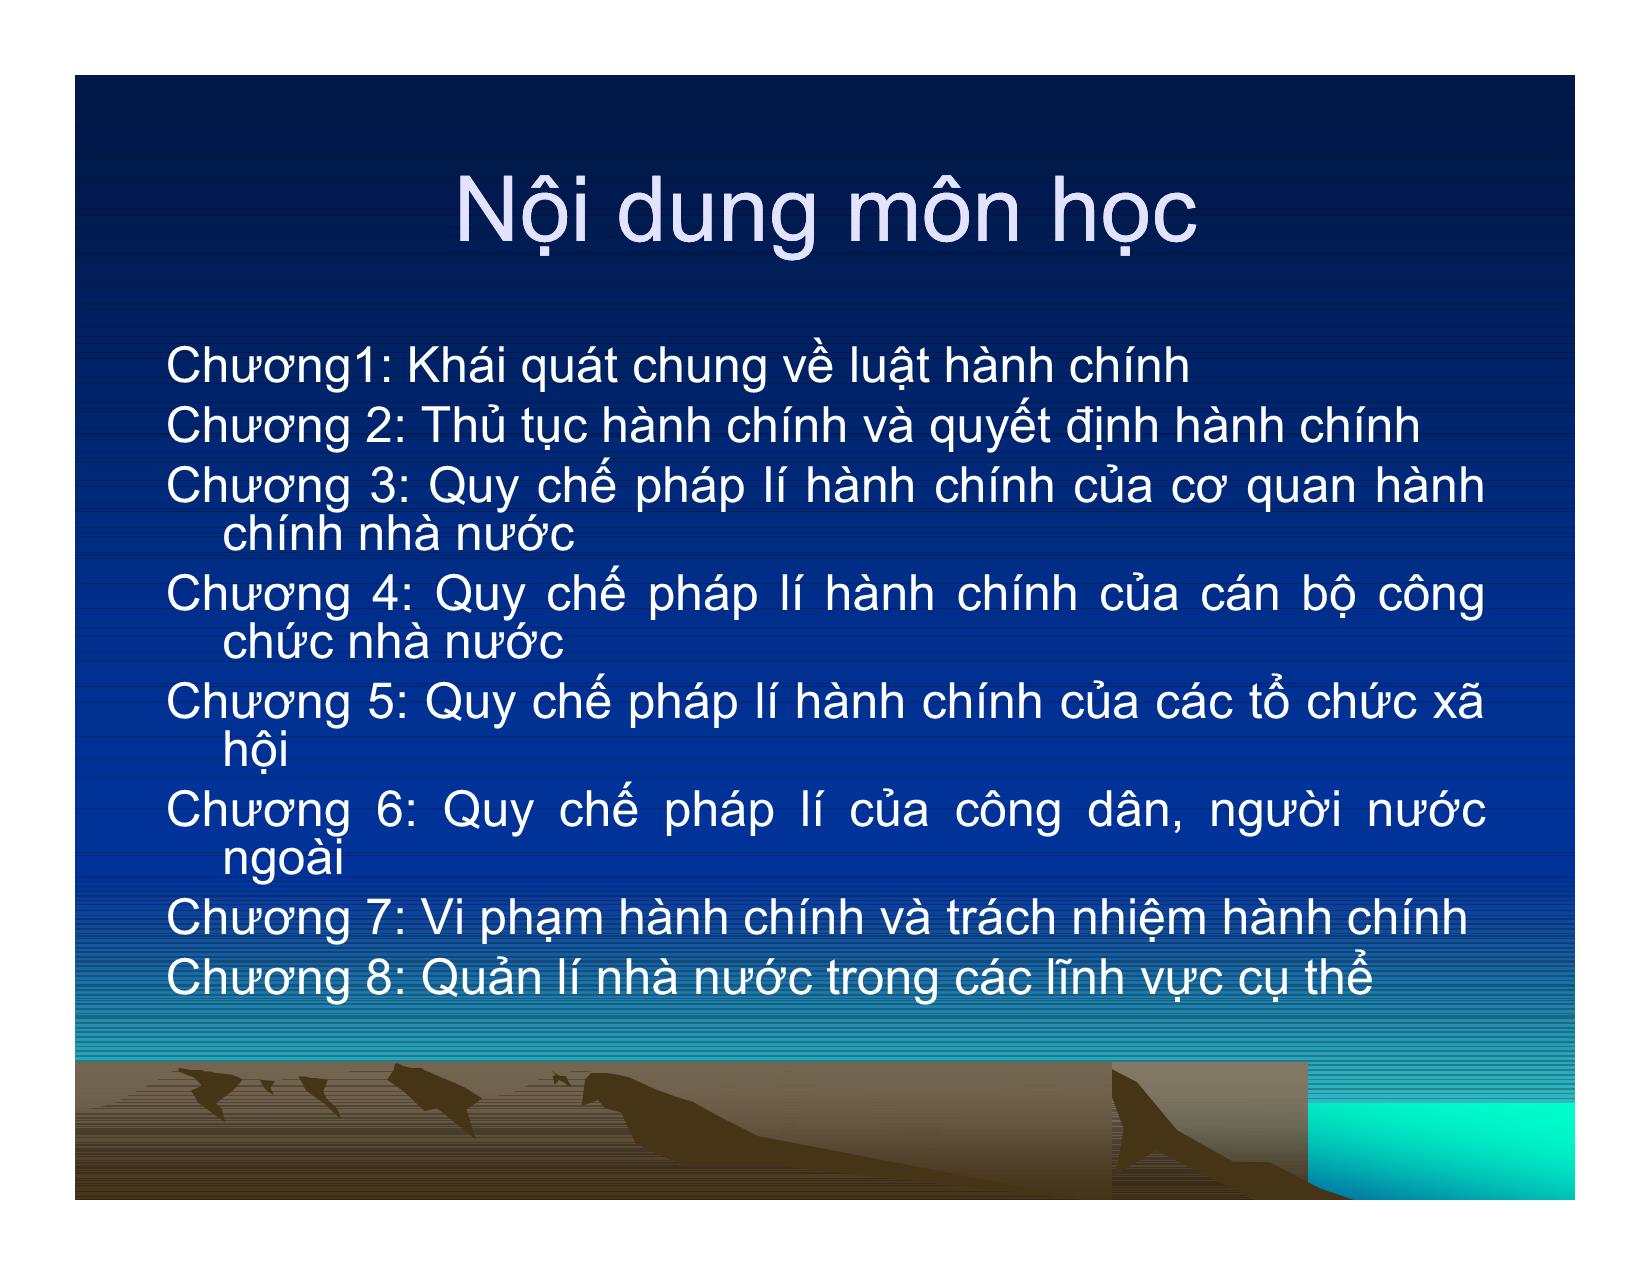 Bài giảng Luật hành chính Việt Nam - Nguyễn Quang Huy trang 2